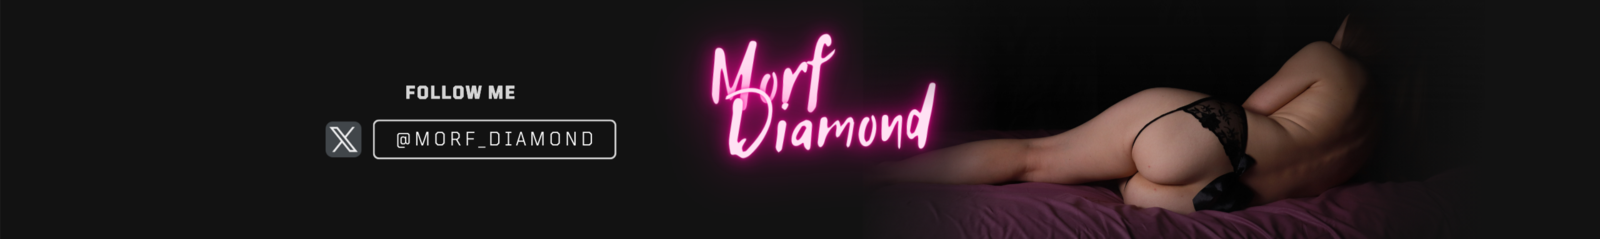 Morf Diamond